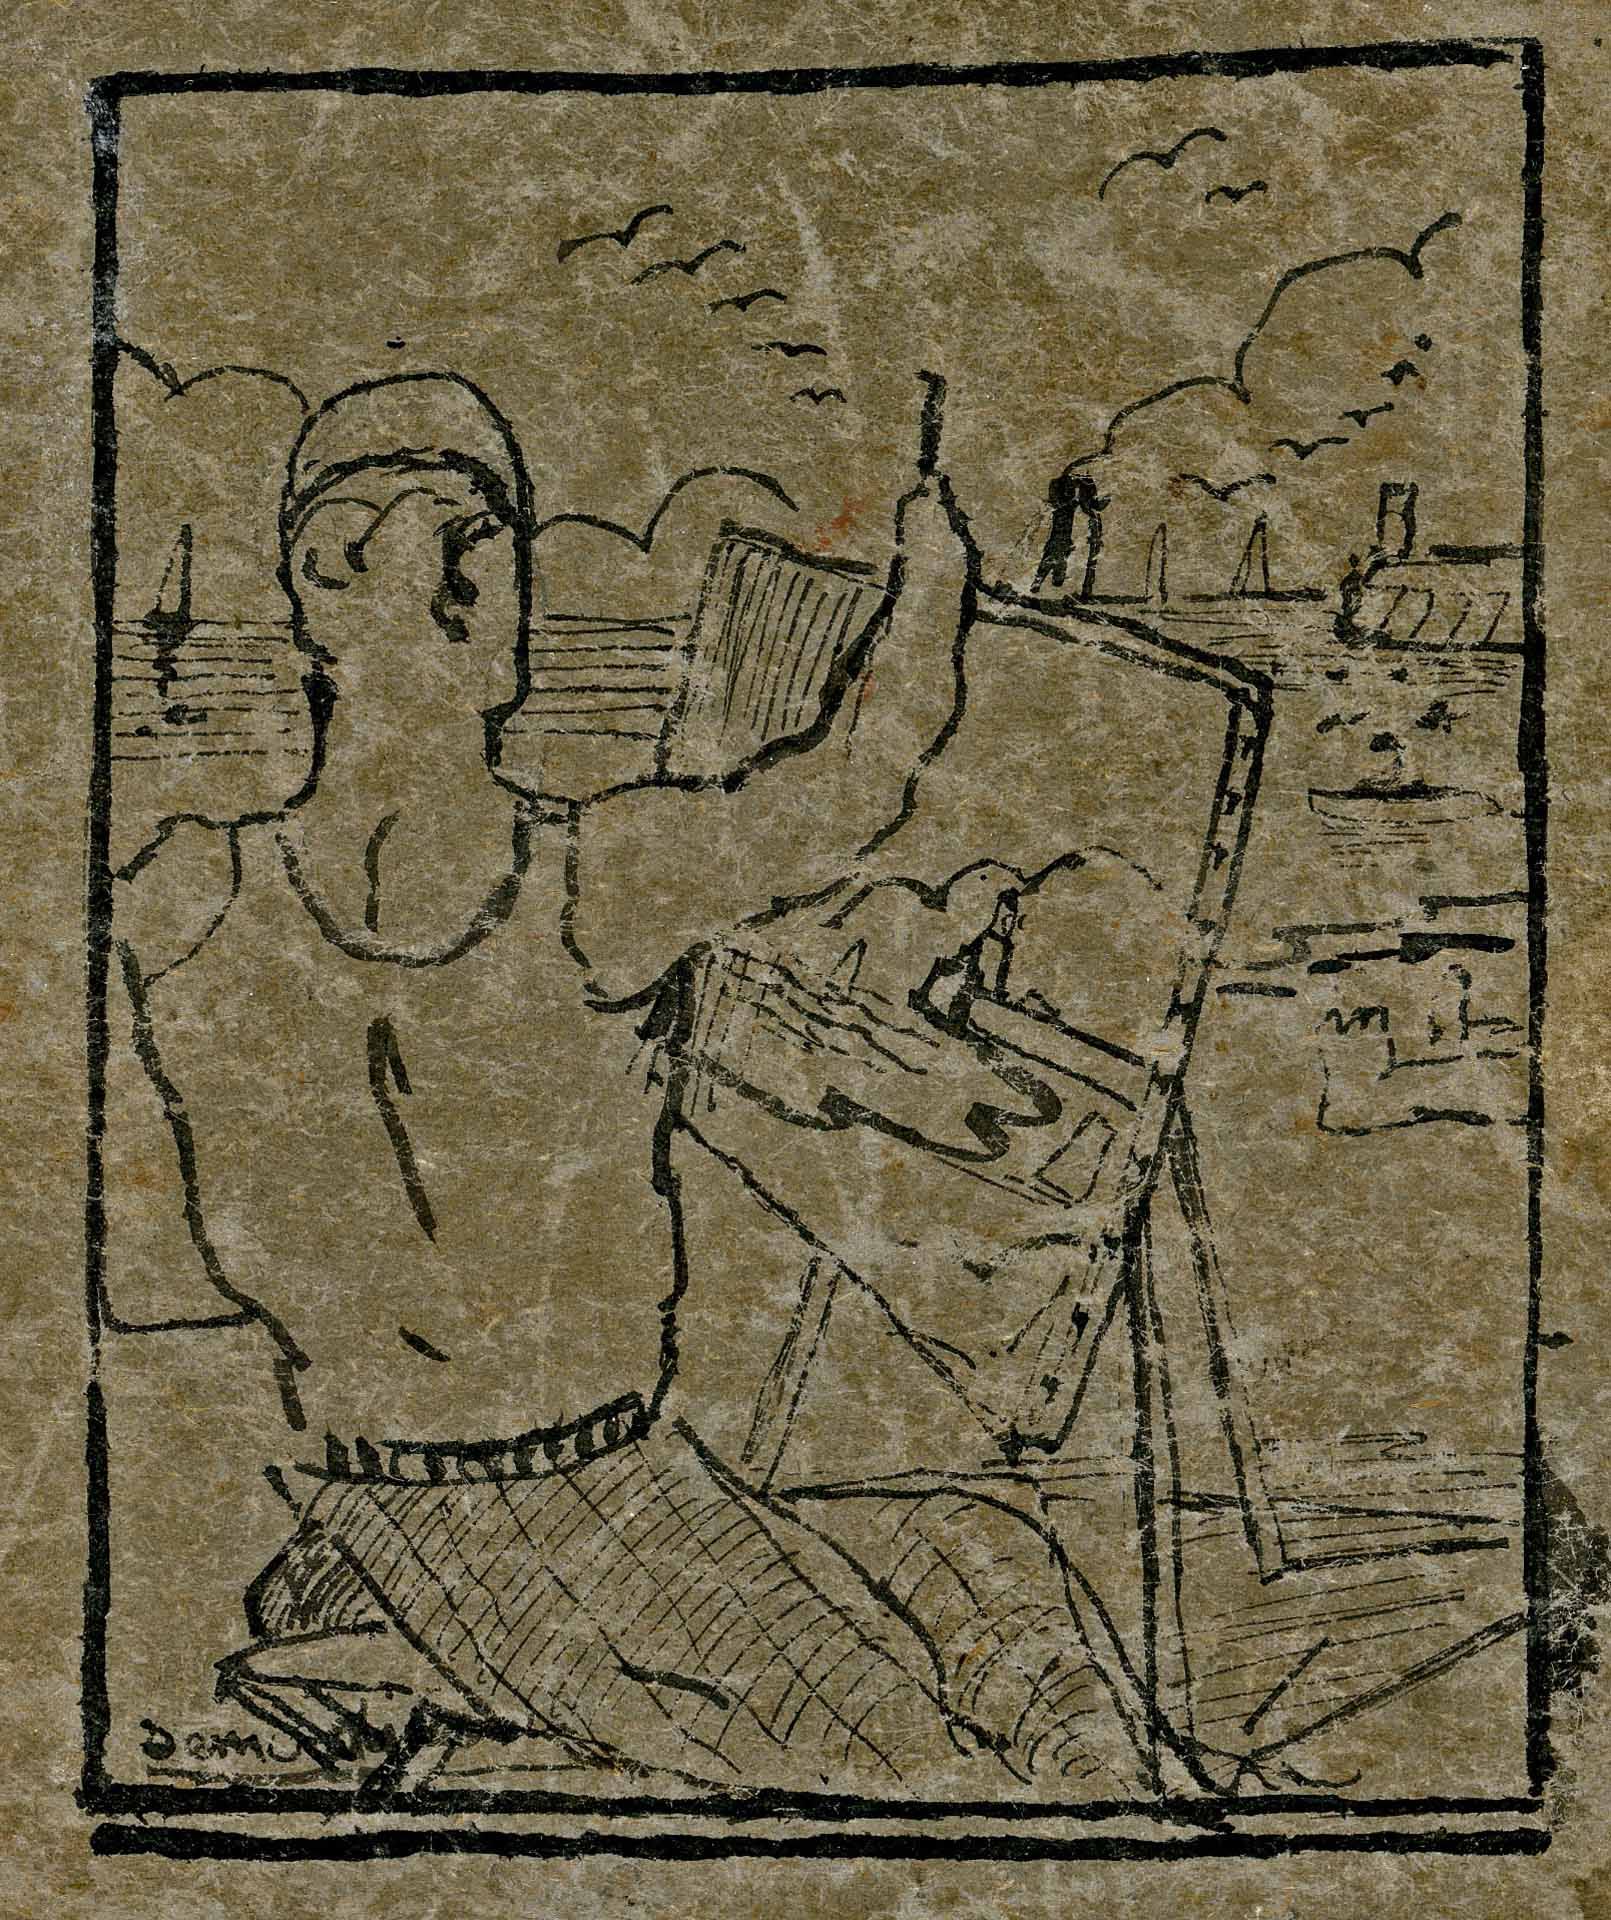 détail de la couverture avec dessin à l'encre signé "semerdjian" en bas à gauche